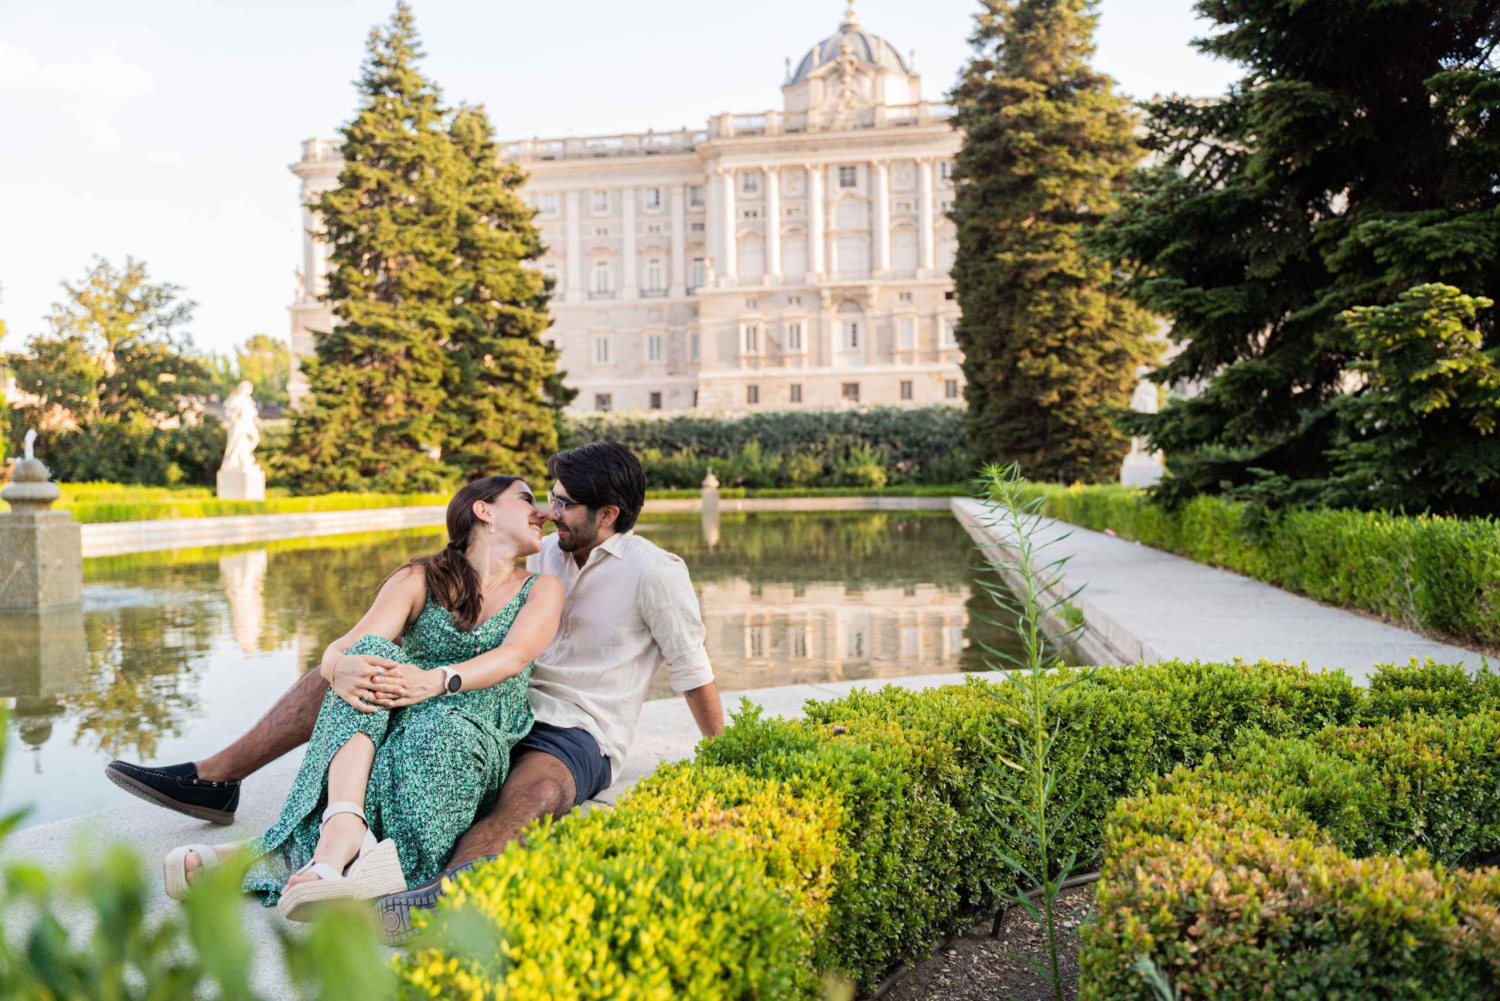 Madrid : Photos professionnelles du palais royal